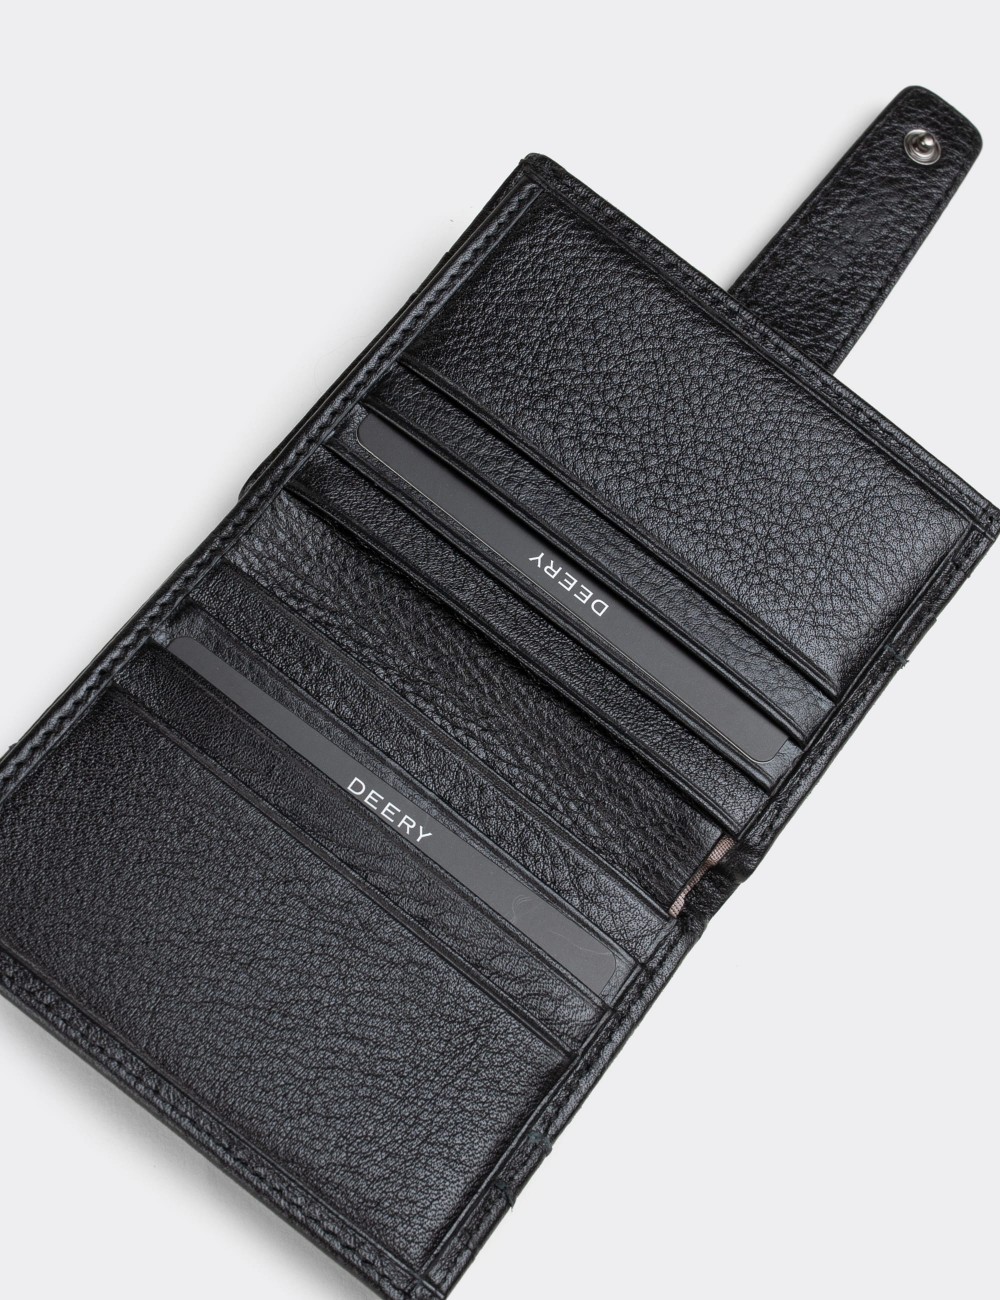  Leather Black Men's Wallet - 00518MSYHZ01